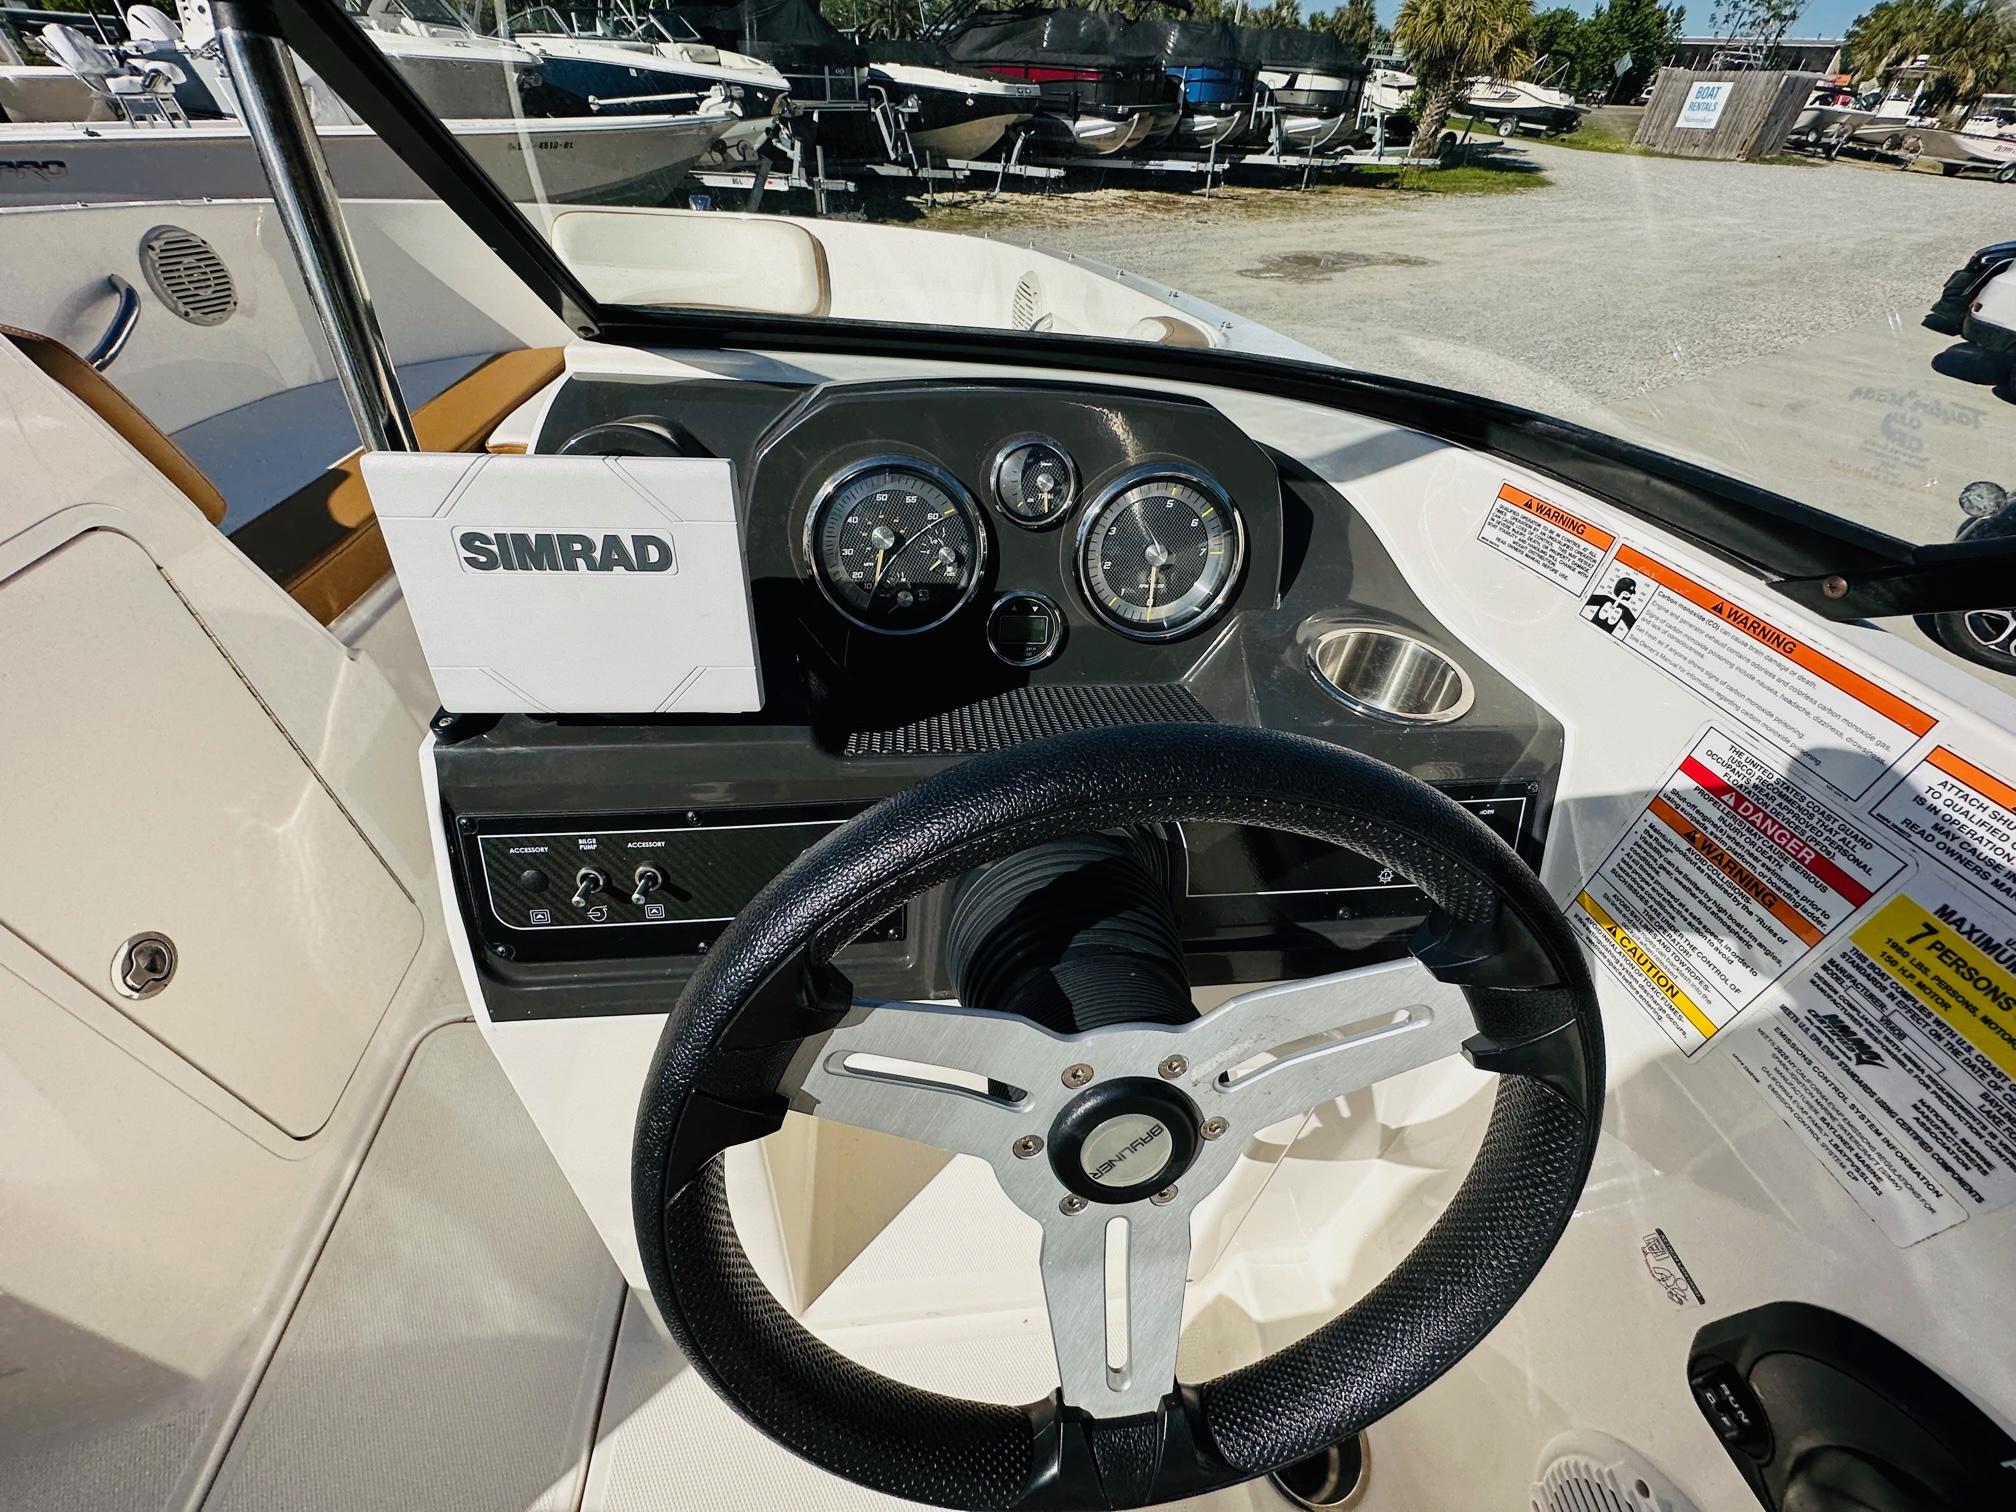 2020 Bayliner VR4 Outboard